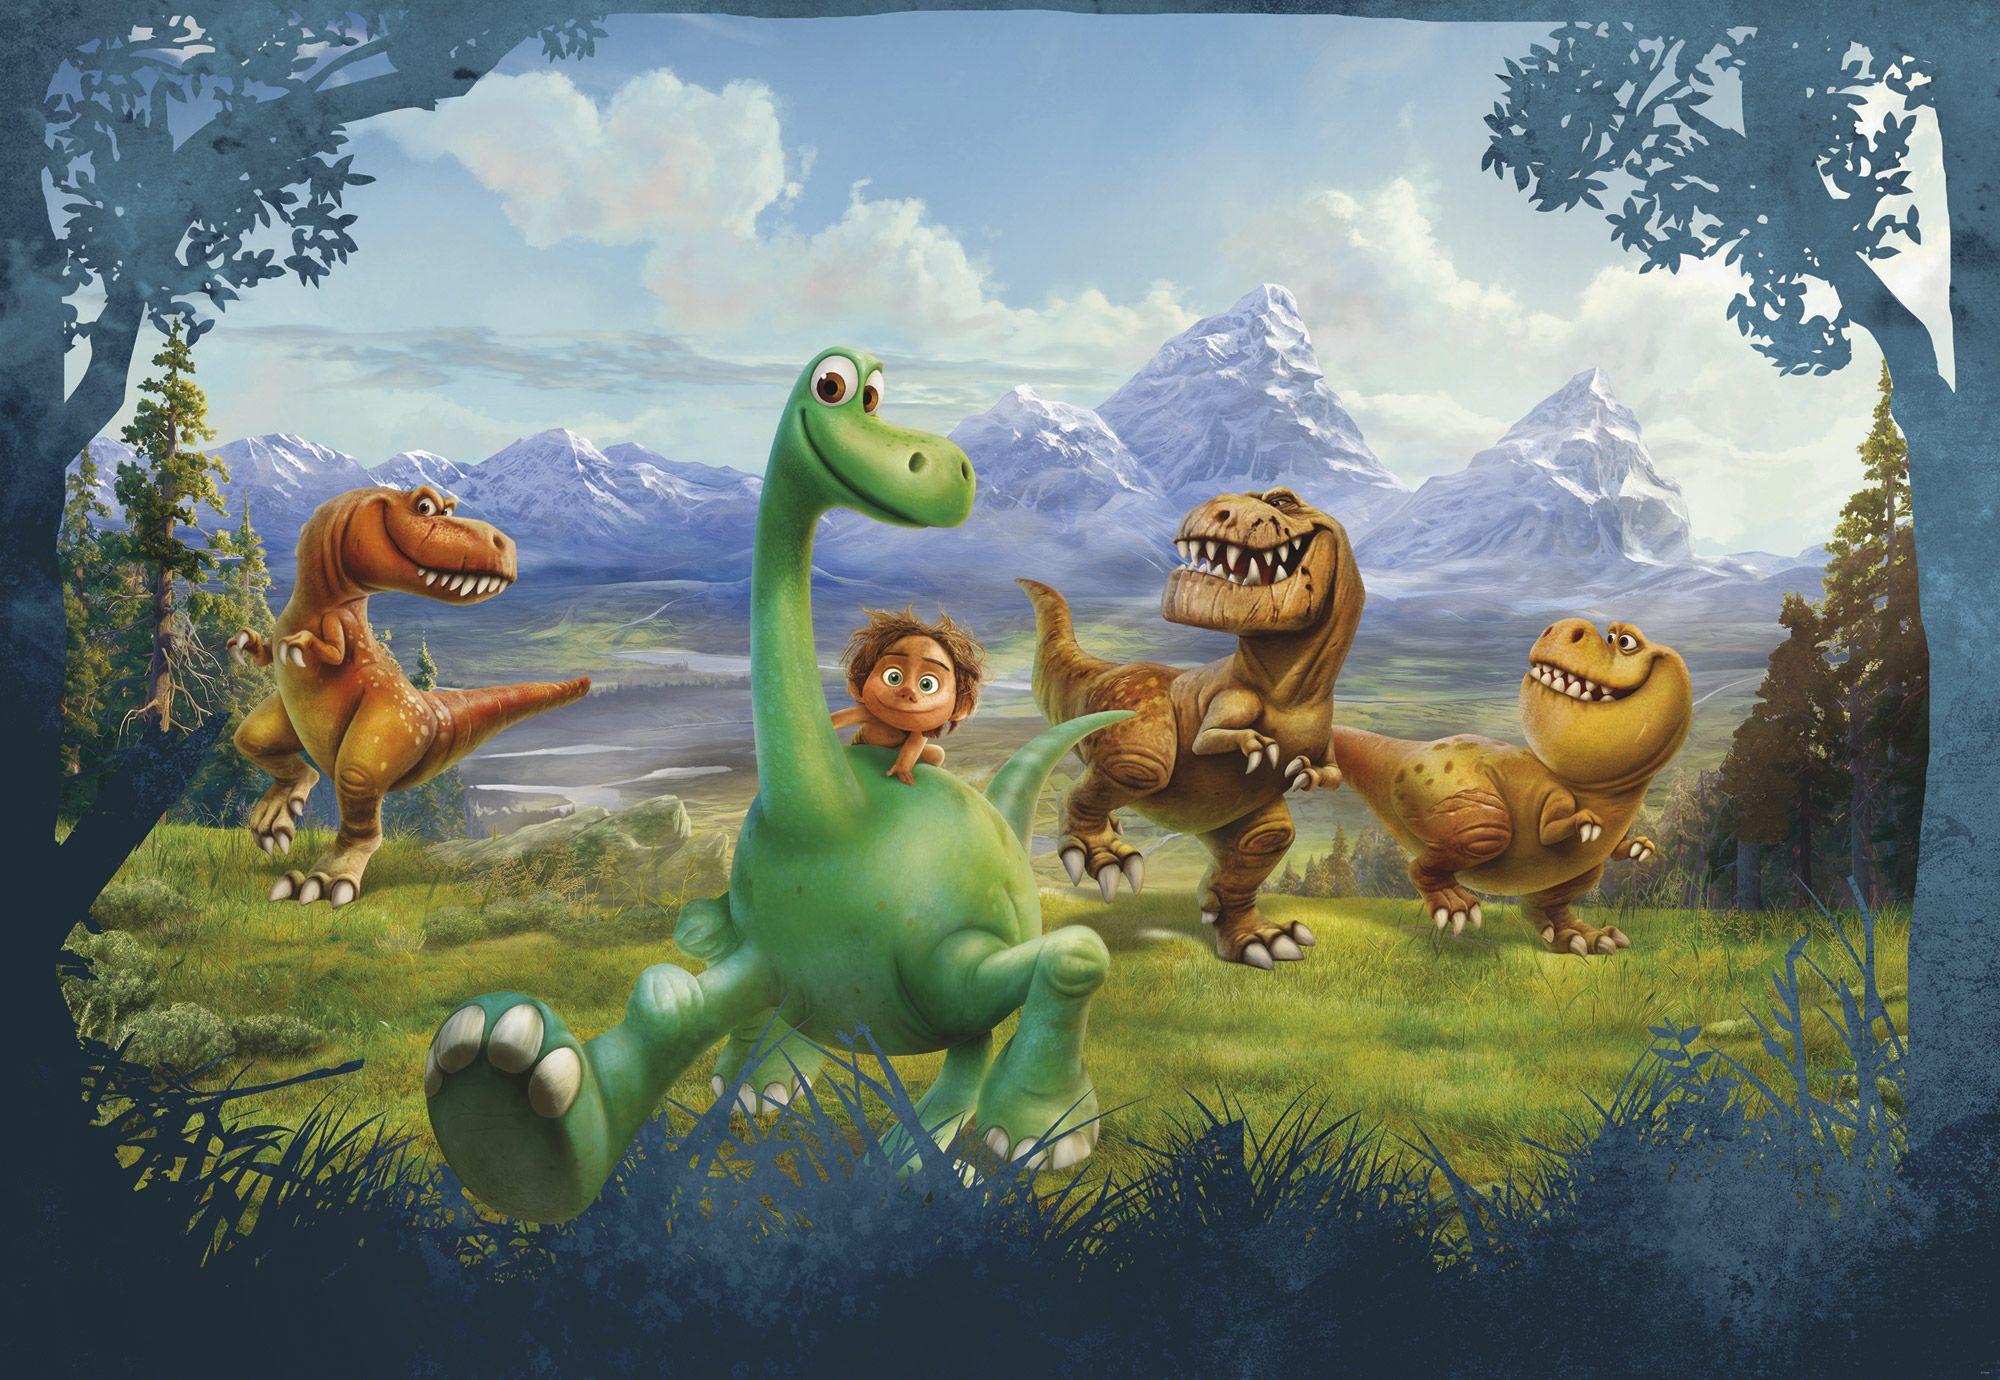 The Good Dinosaur Wallpaper. Dinosaur